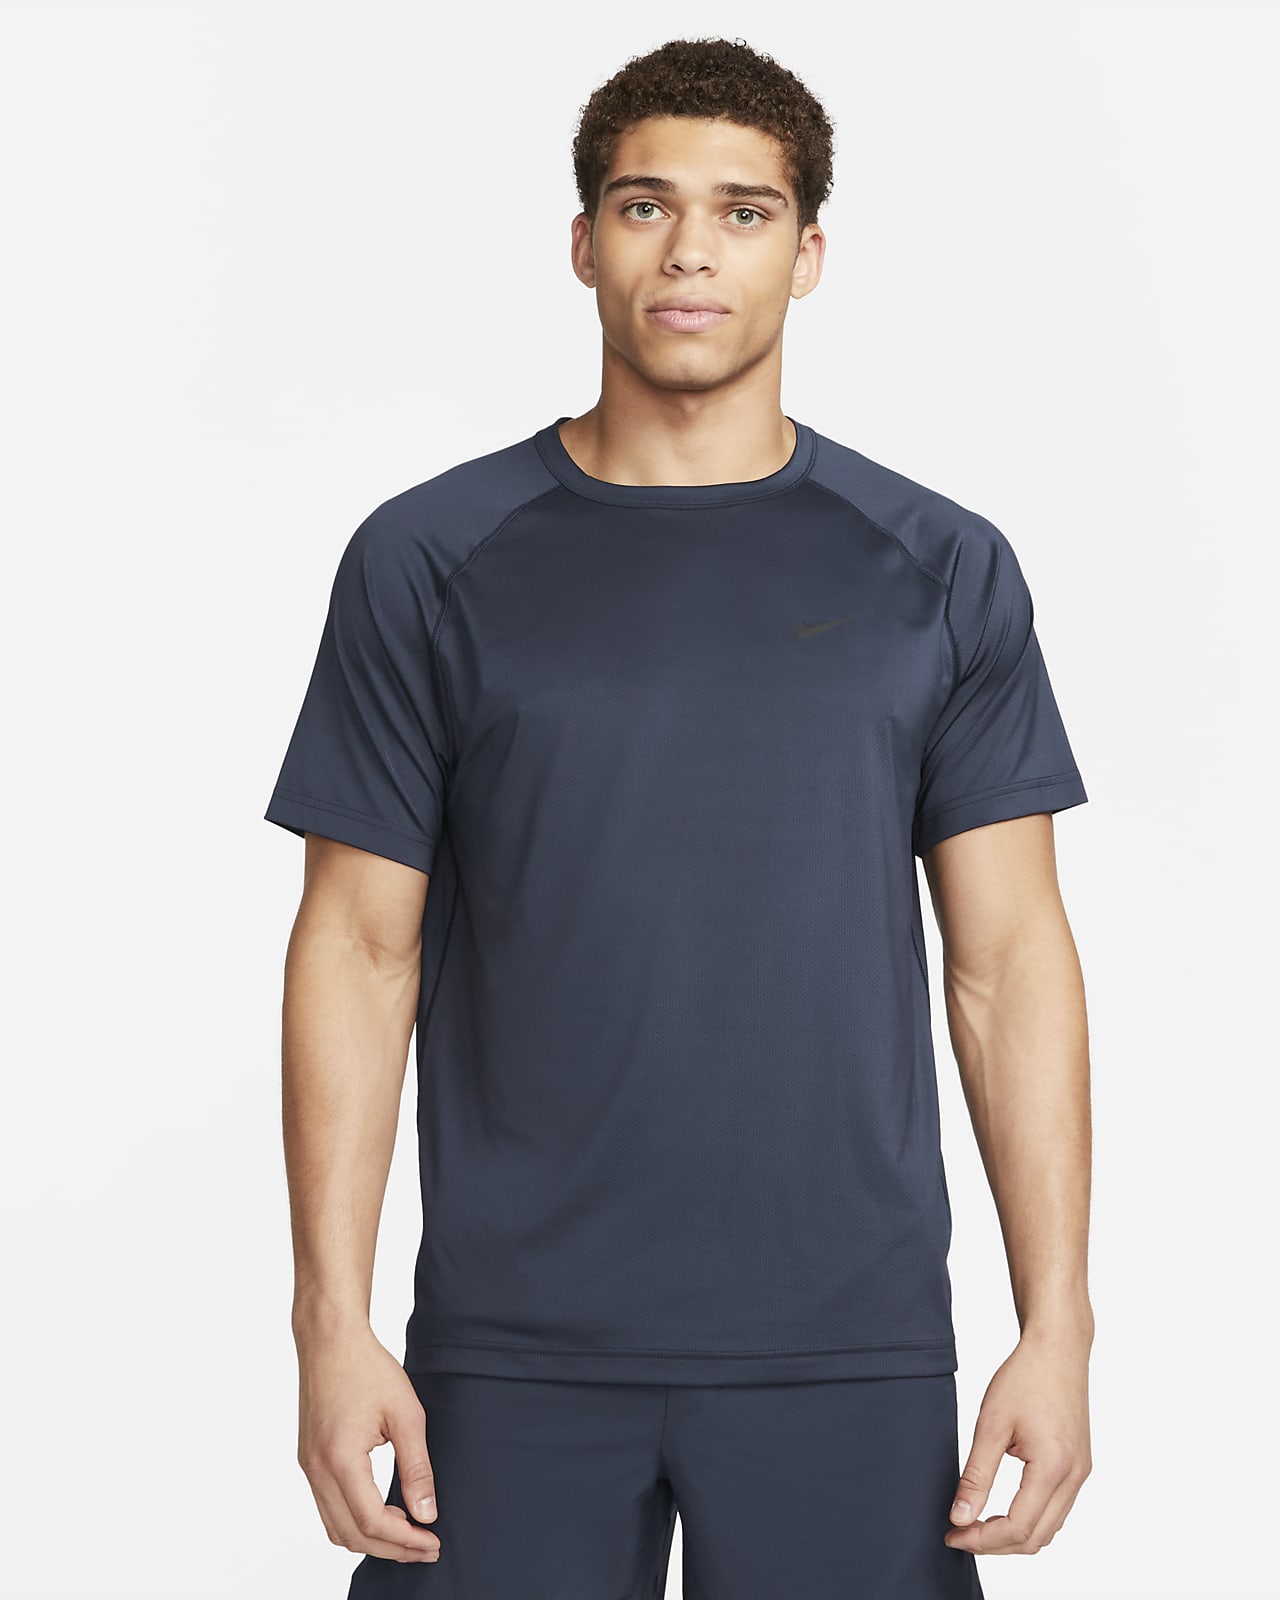 Pánské fitness tričko Nike Ready Dri-FIT s krátkým rukávem